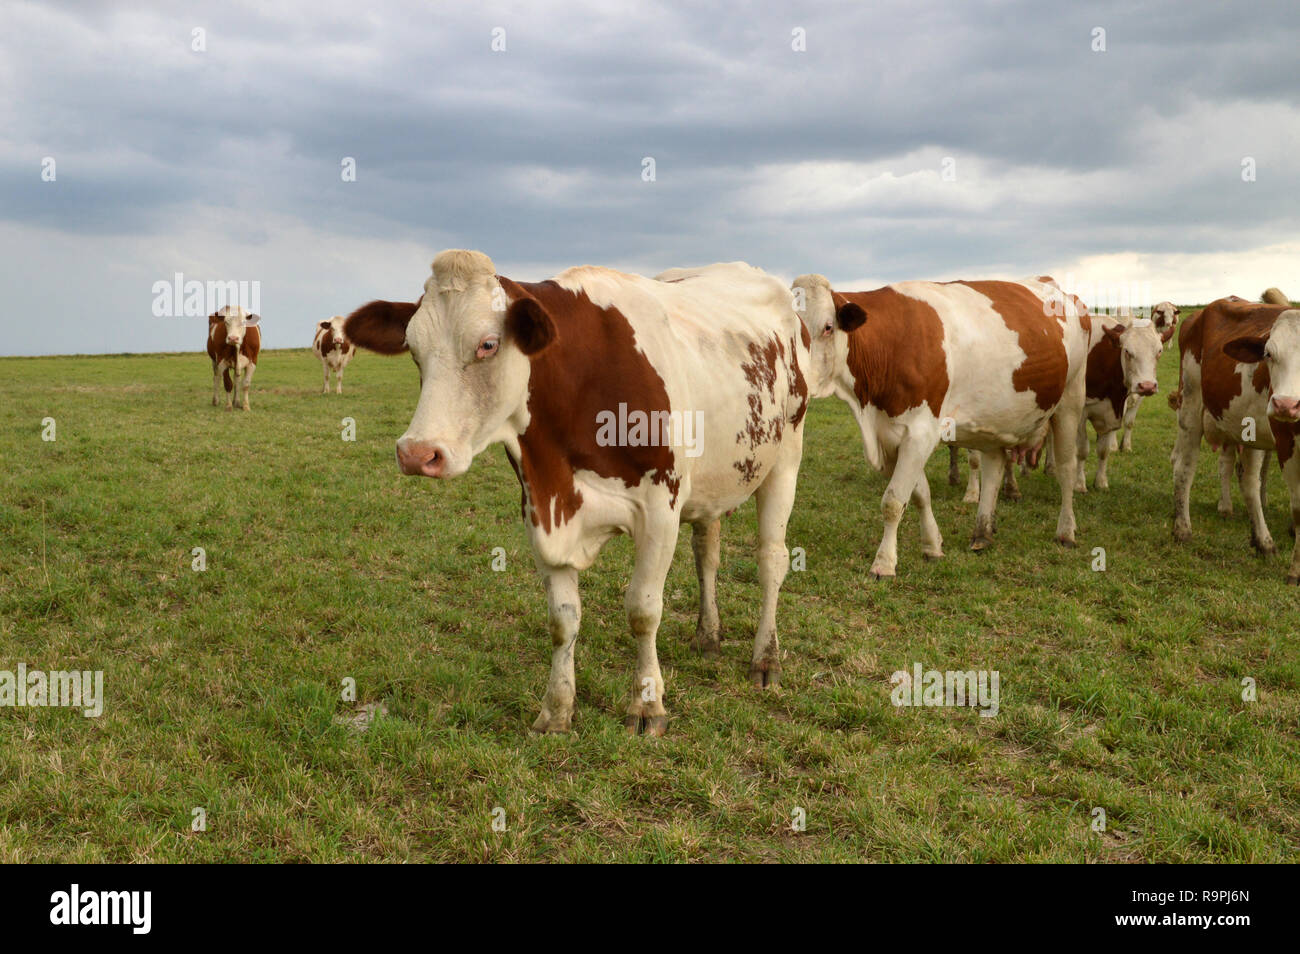 Un troupeau de vaches laitières, les bovins laitiers ou dans un vert pâturage. Vaches montbéliardes exclusivement des vaches de race. Banque D'Images